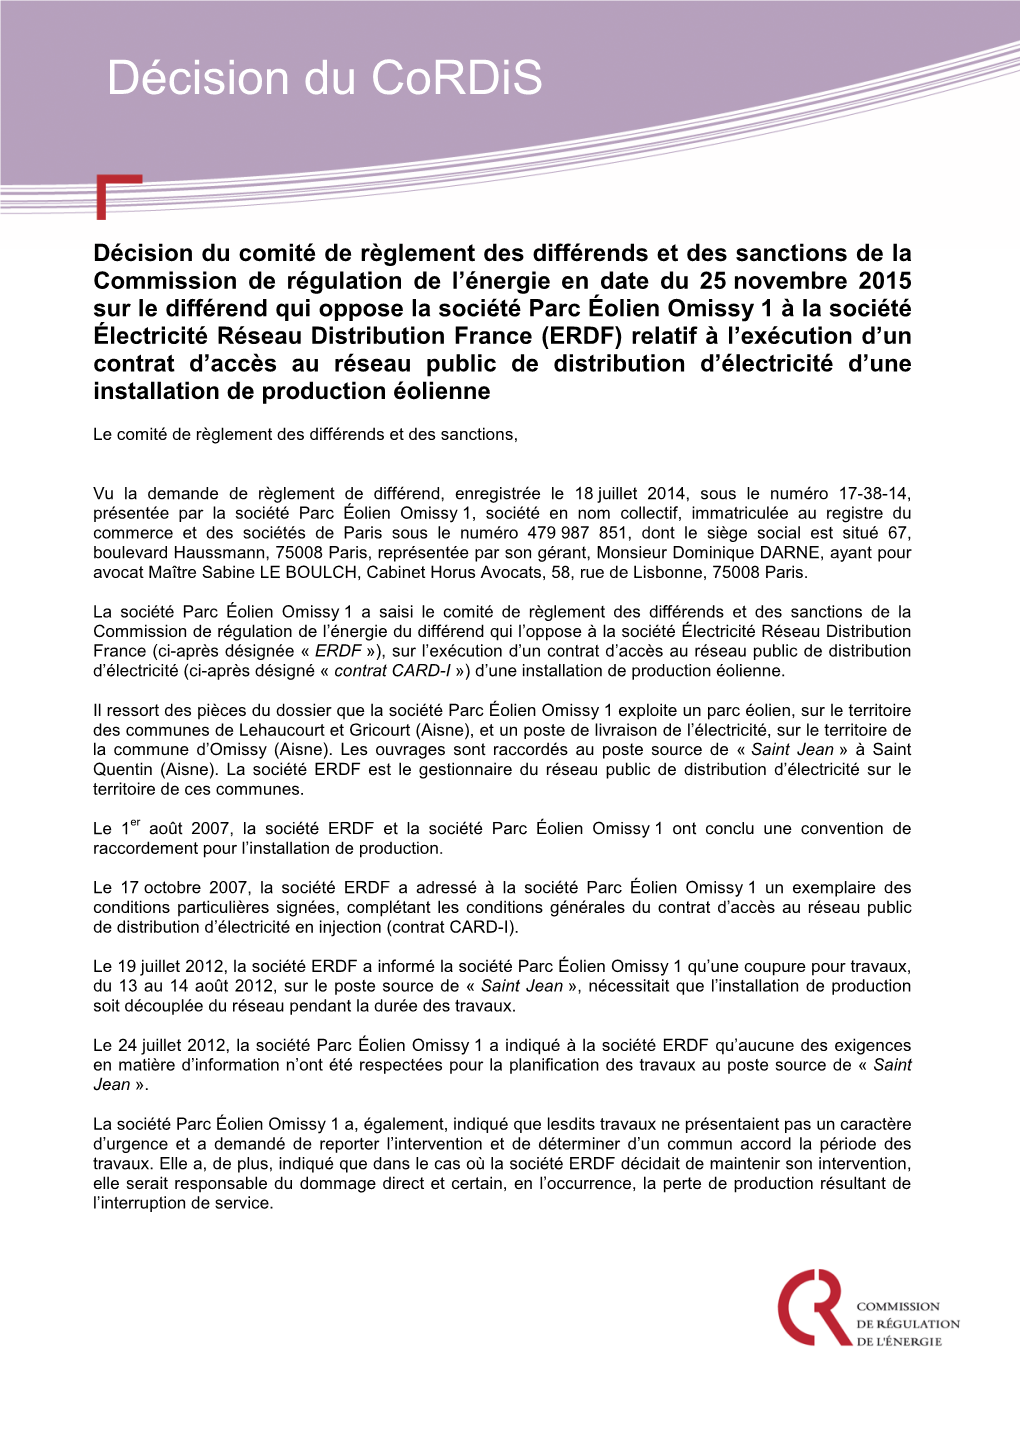 Décision Du Cordis De La CRE En Date Du 25 Novembre 2015 Sur Le